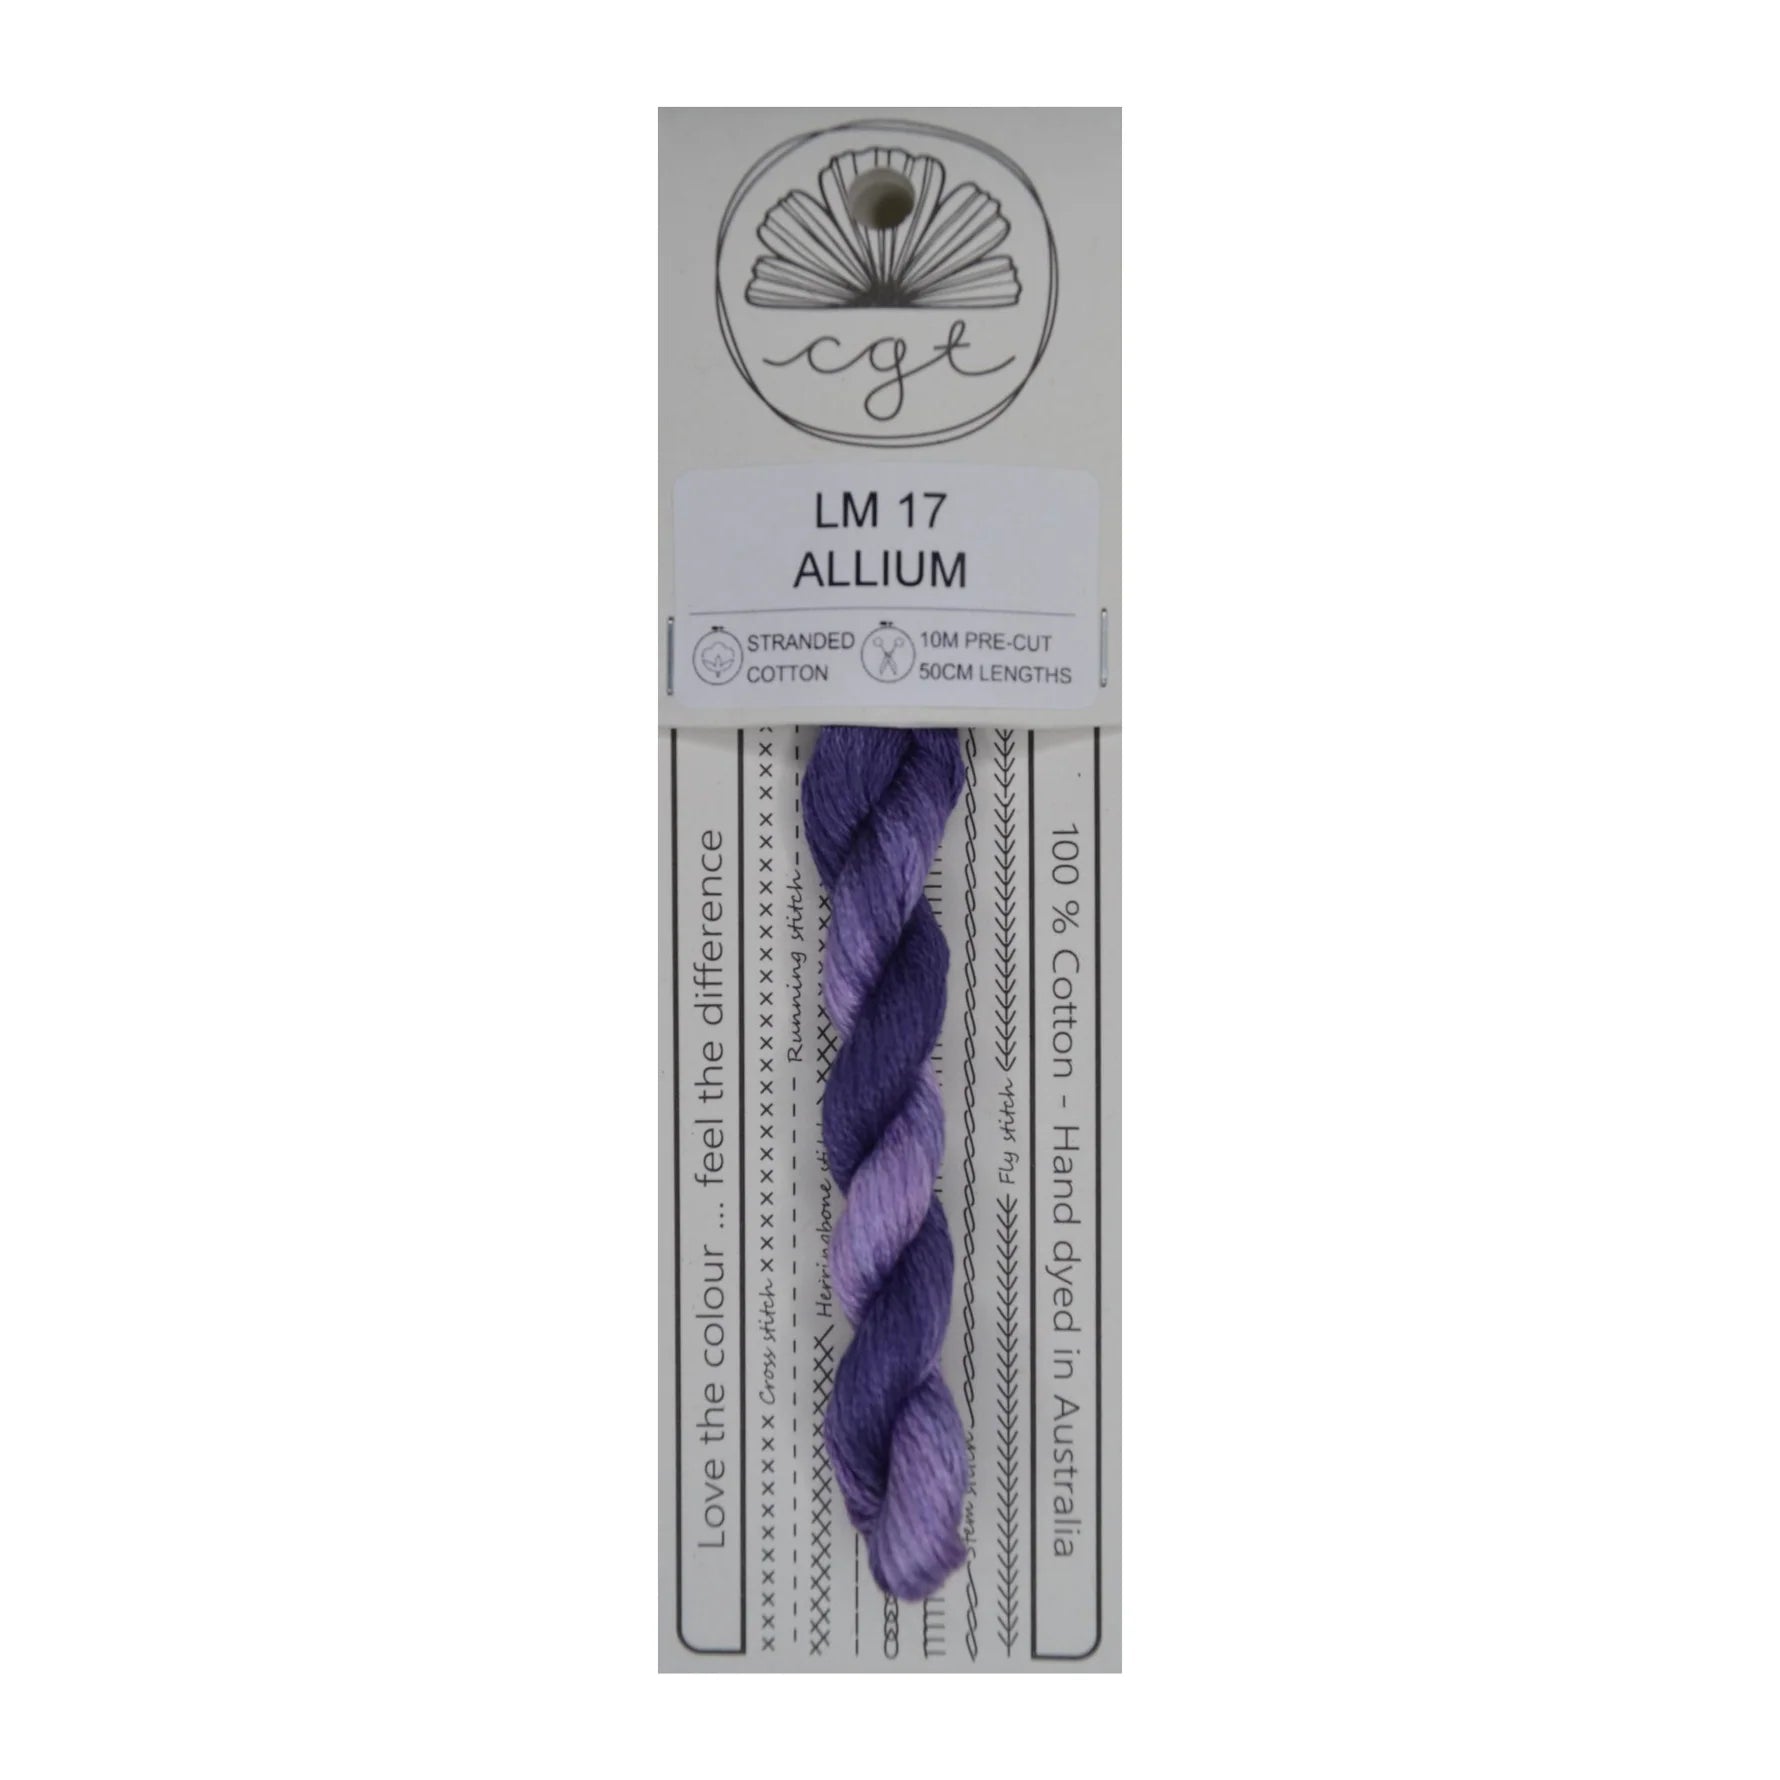 Allium LM 17 - Cottage Garden Threads, Thread & Floss, The Crafty Grimalkin - A Cross Stitch Store